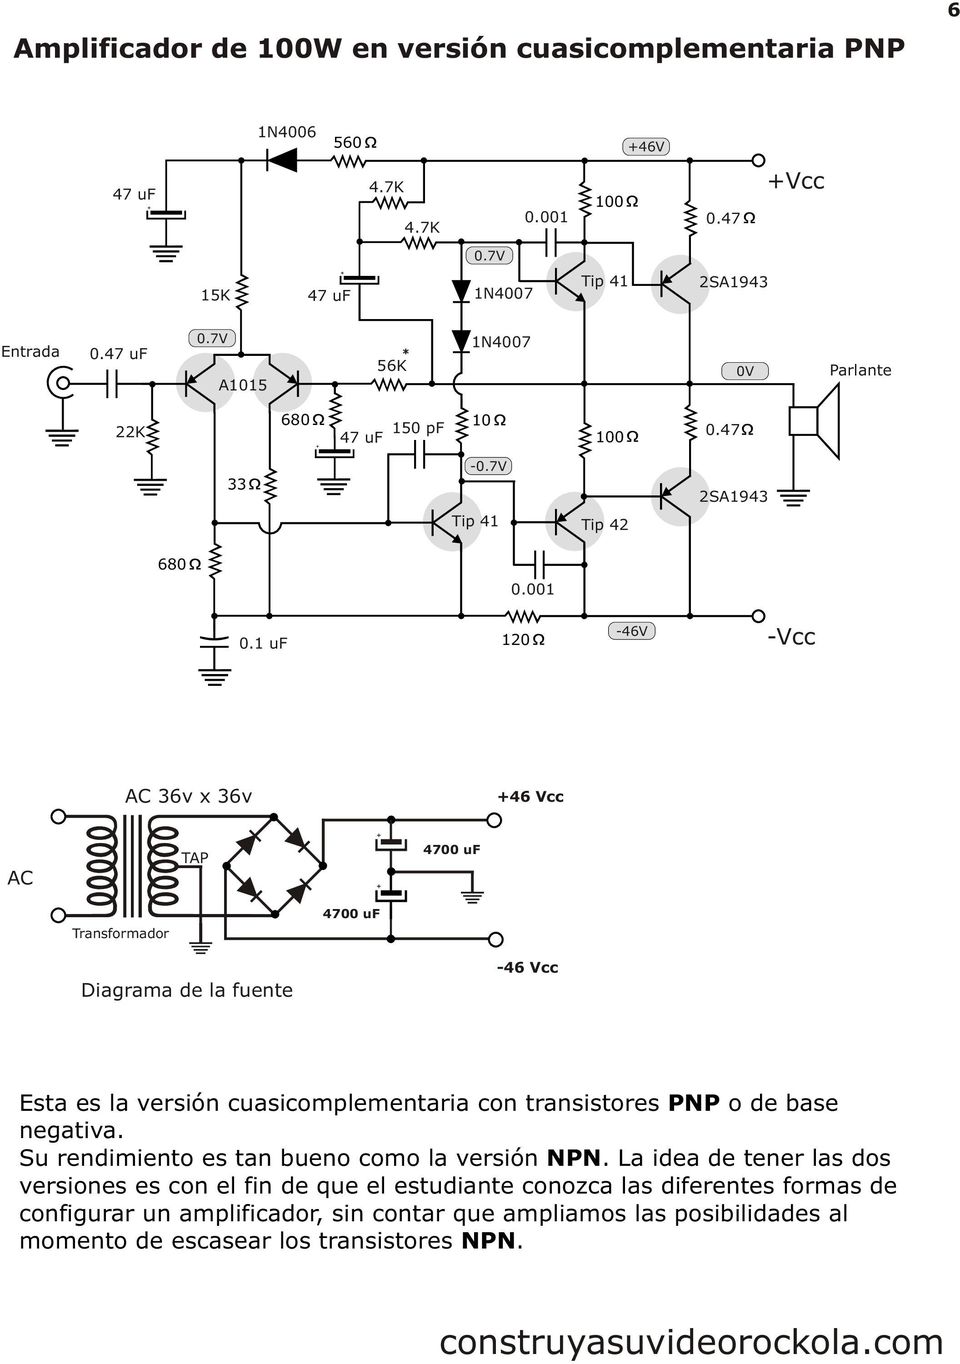 1 uf -46 -cc AC 36v x 36v +46 cc AC TAP Transformador Diagrama de la fuente -46 cc Esta es la versión cuasicomplementaria con transistores PNP o de